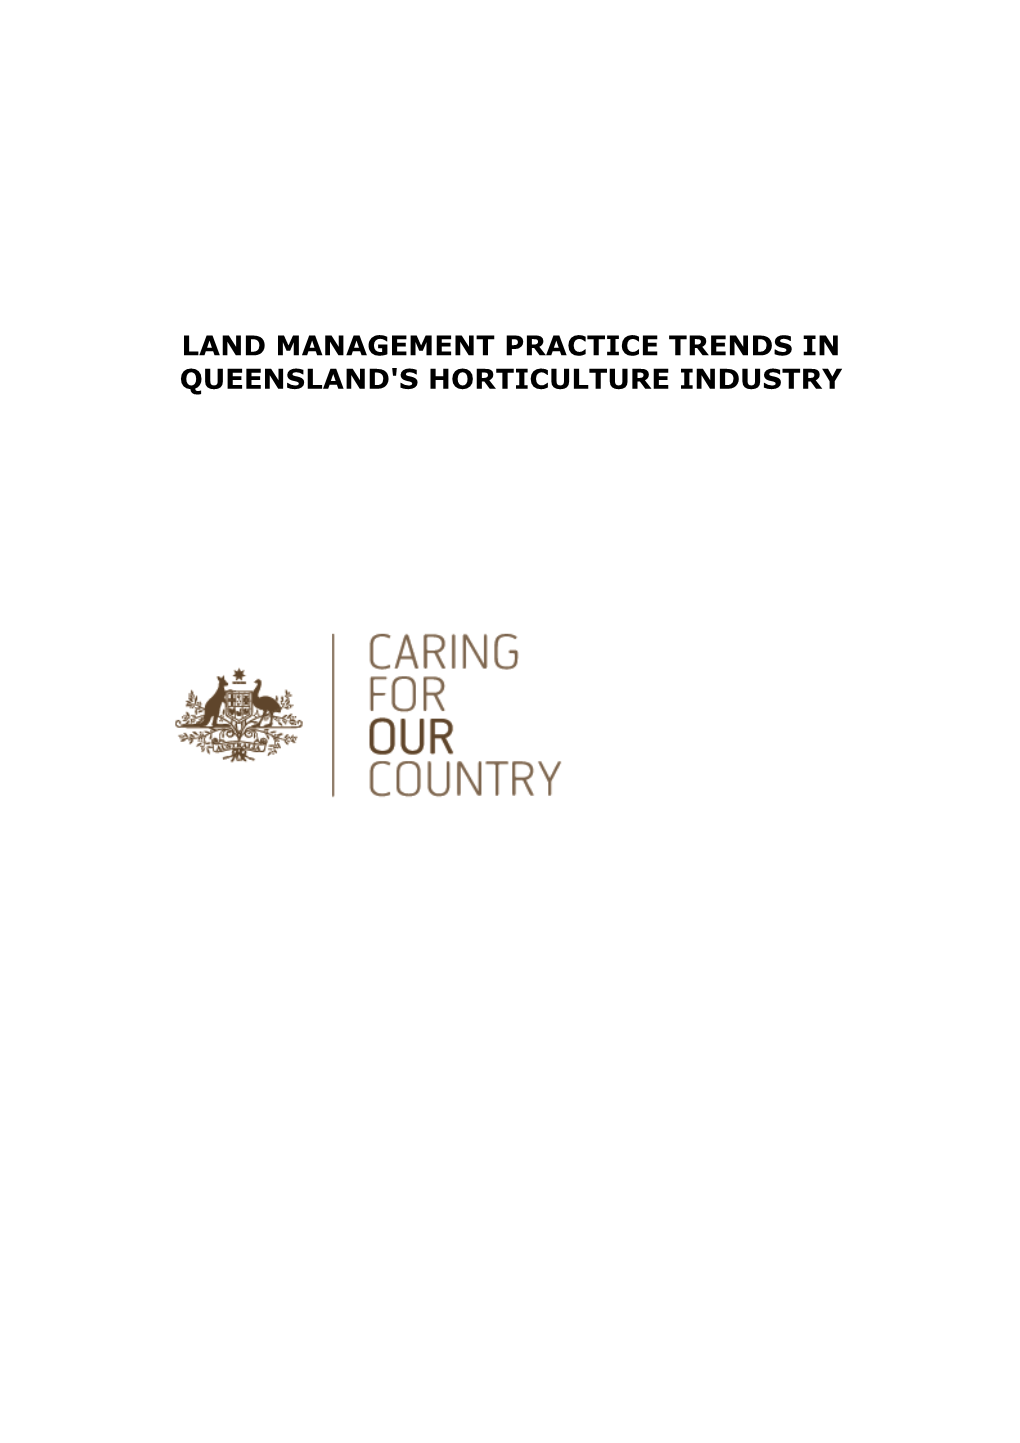 Land Management Practice Trends in Queensland's Horticulture Industry